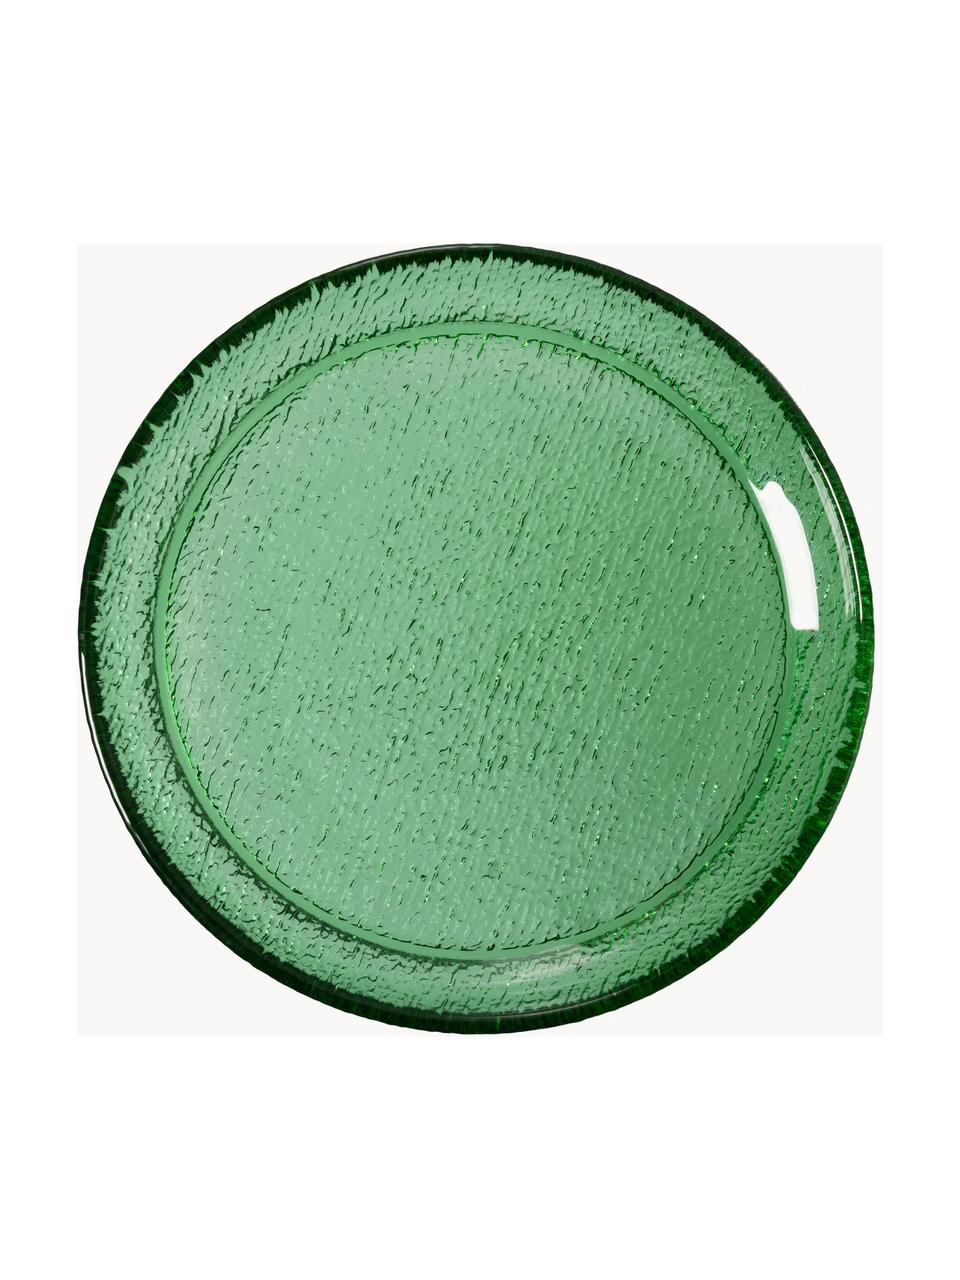 Frühstucksteller The Emeralds aus Glas, 2 Stück, Glas, Grün, transparent, Ø 21